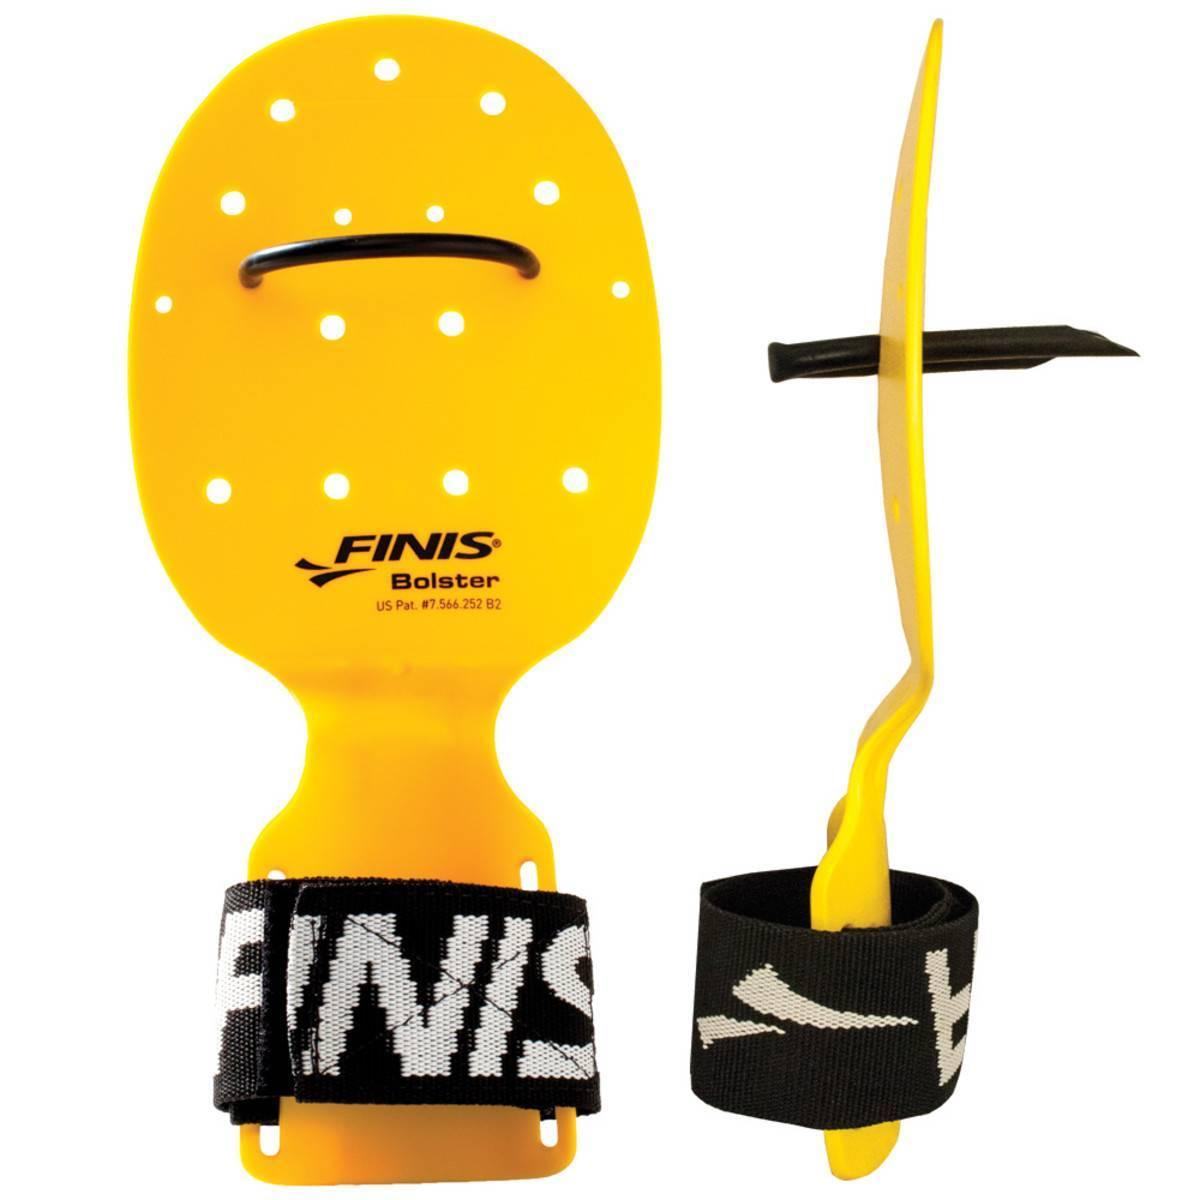 FINIS Bolster Hand Paddles